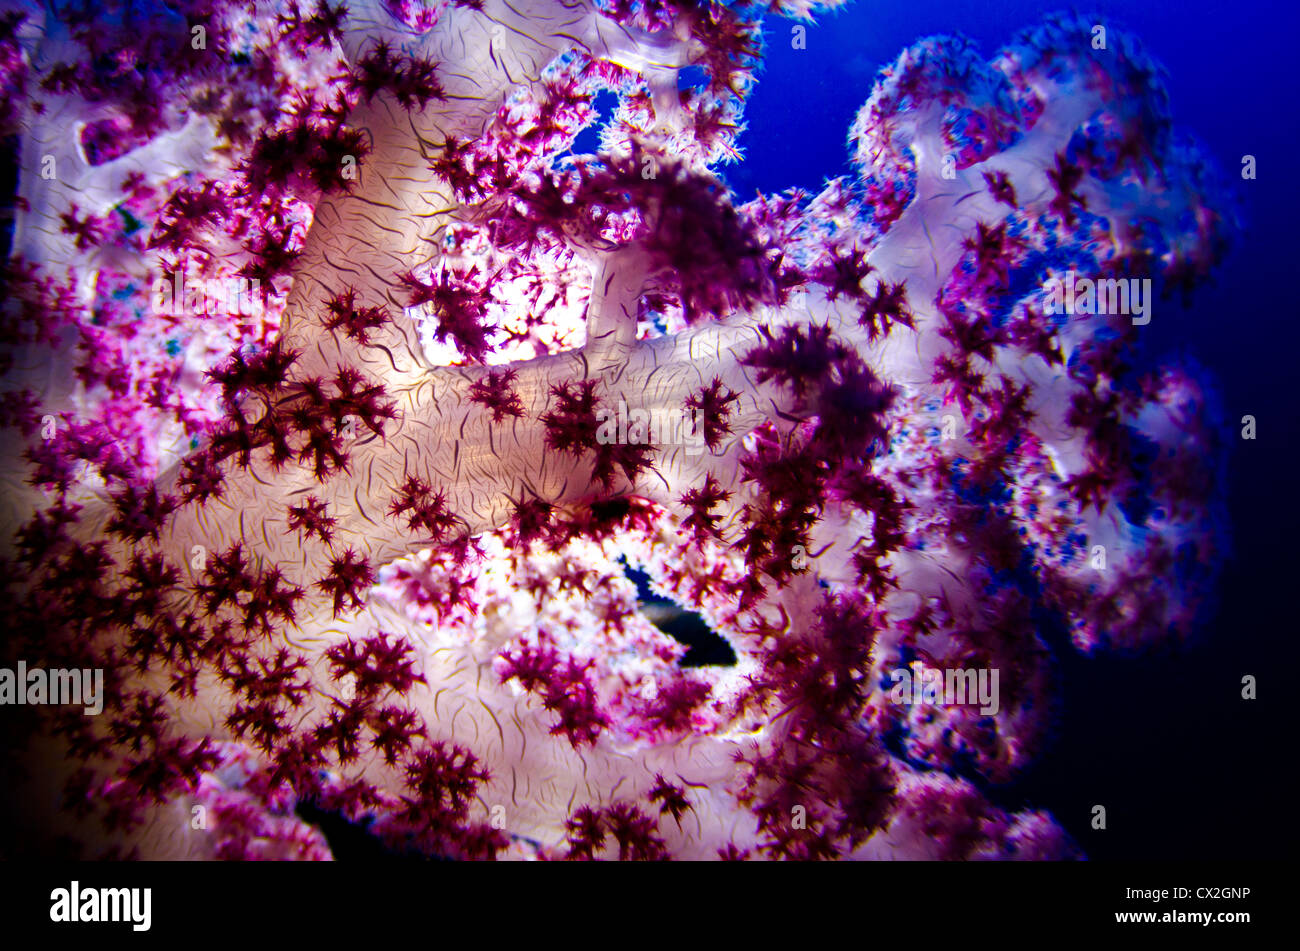 Scena subacquea di Palau, barriere coralline, soft coral, colorato, reef tropicali, rosa, blu acqua, acqua chiara e profonda, oceano mare, Foto Stock